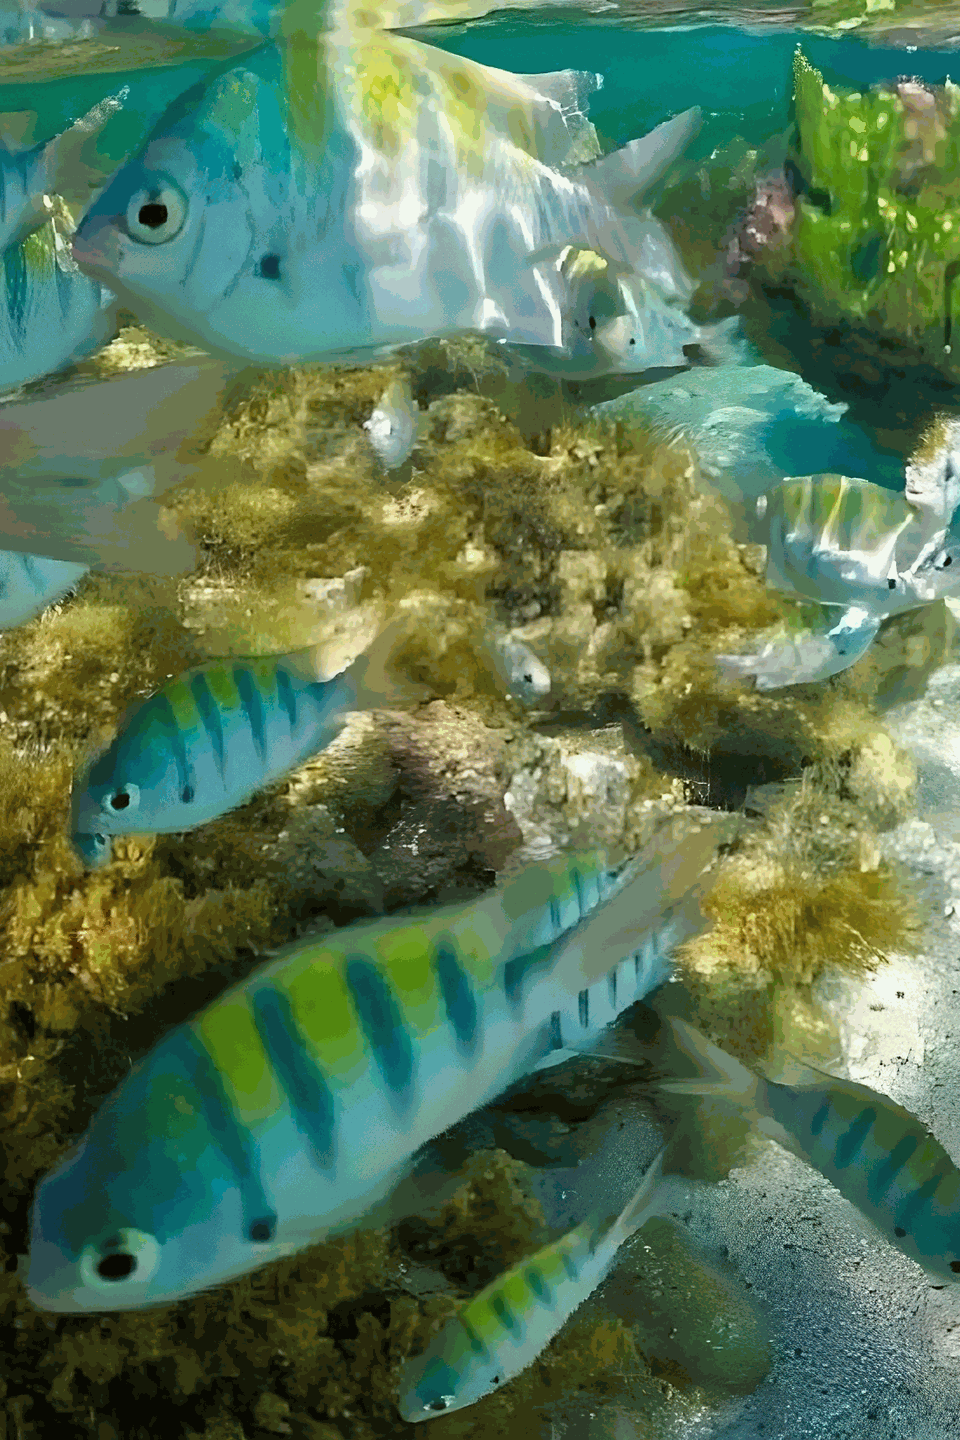 Peixes coloridos na ilha de santo aleixo